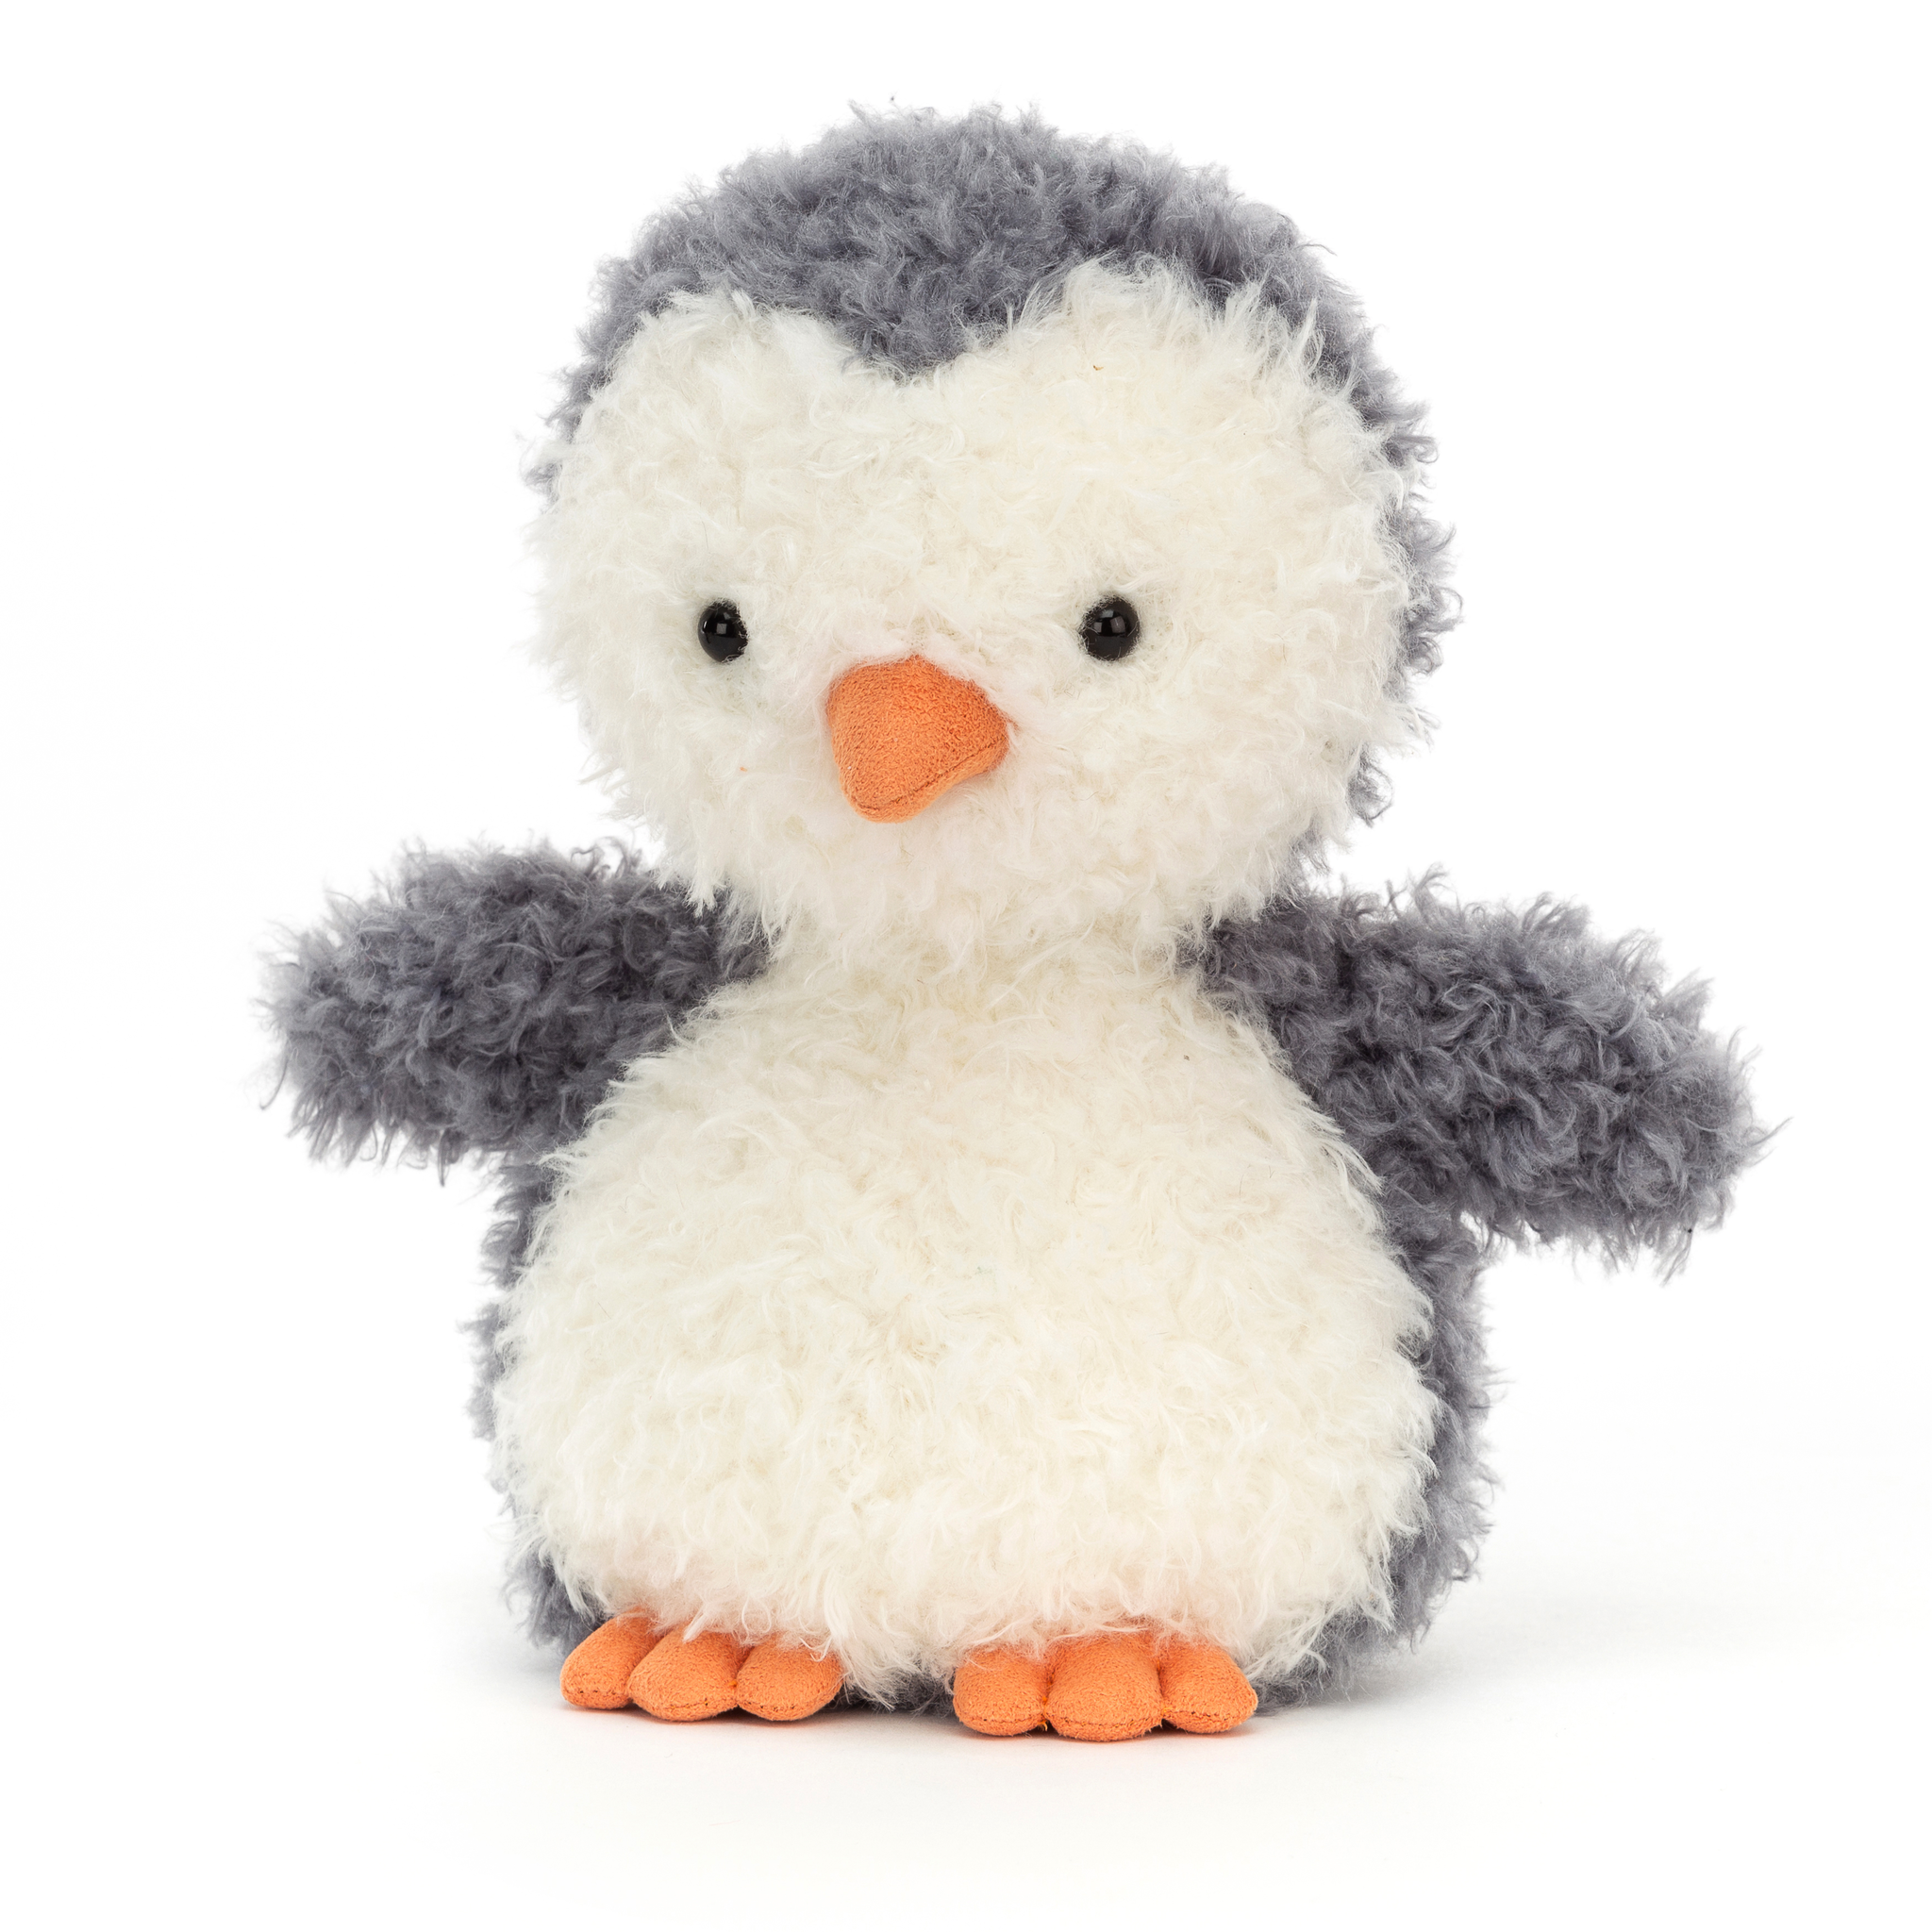 Jellycat- Little Penguin/ gosedjur